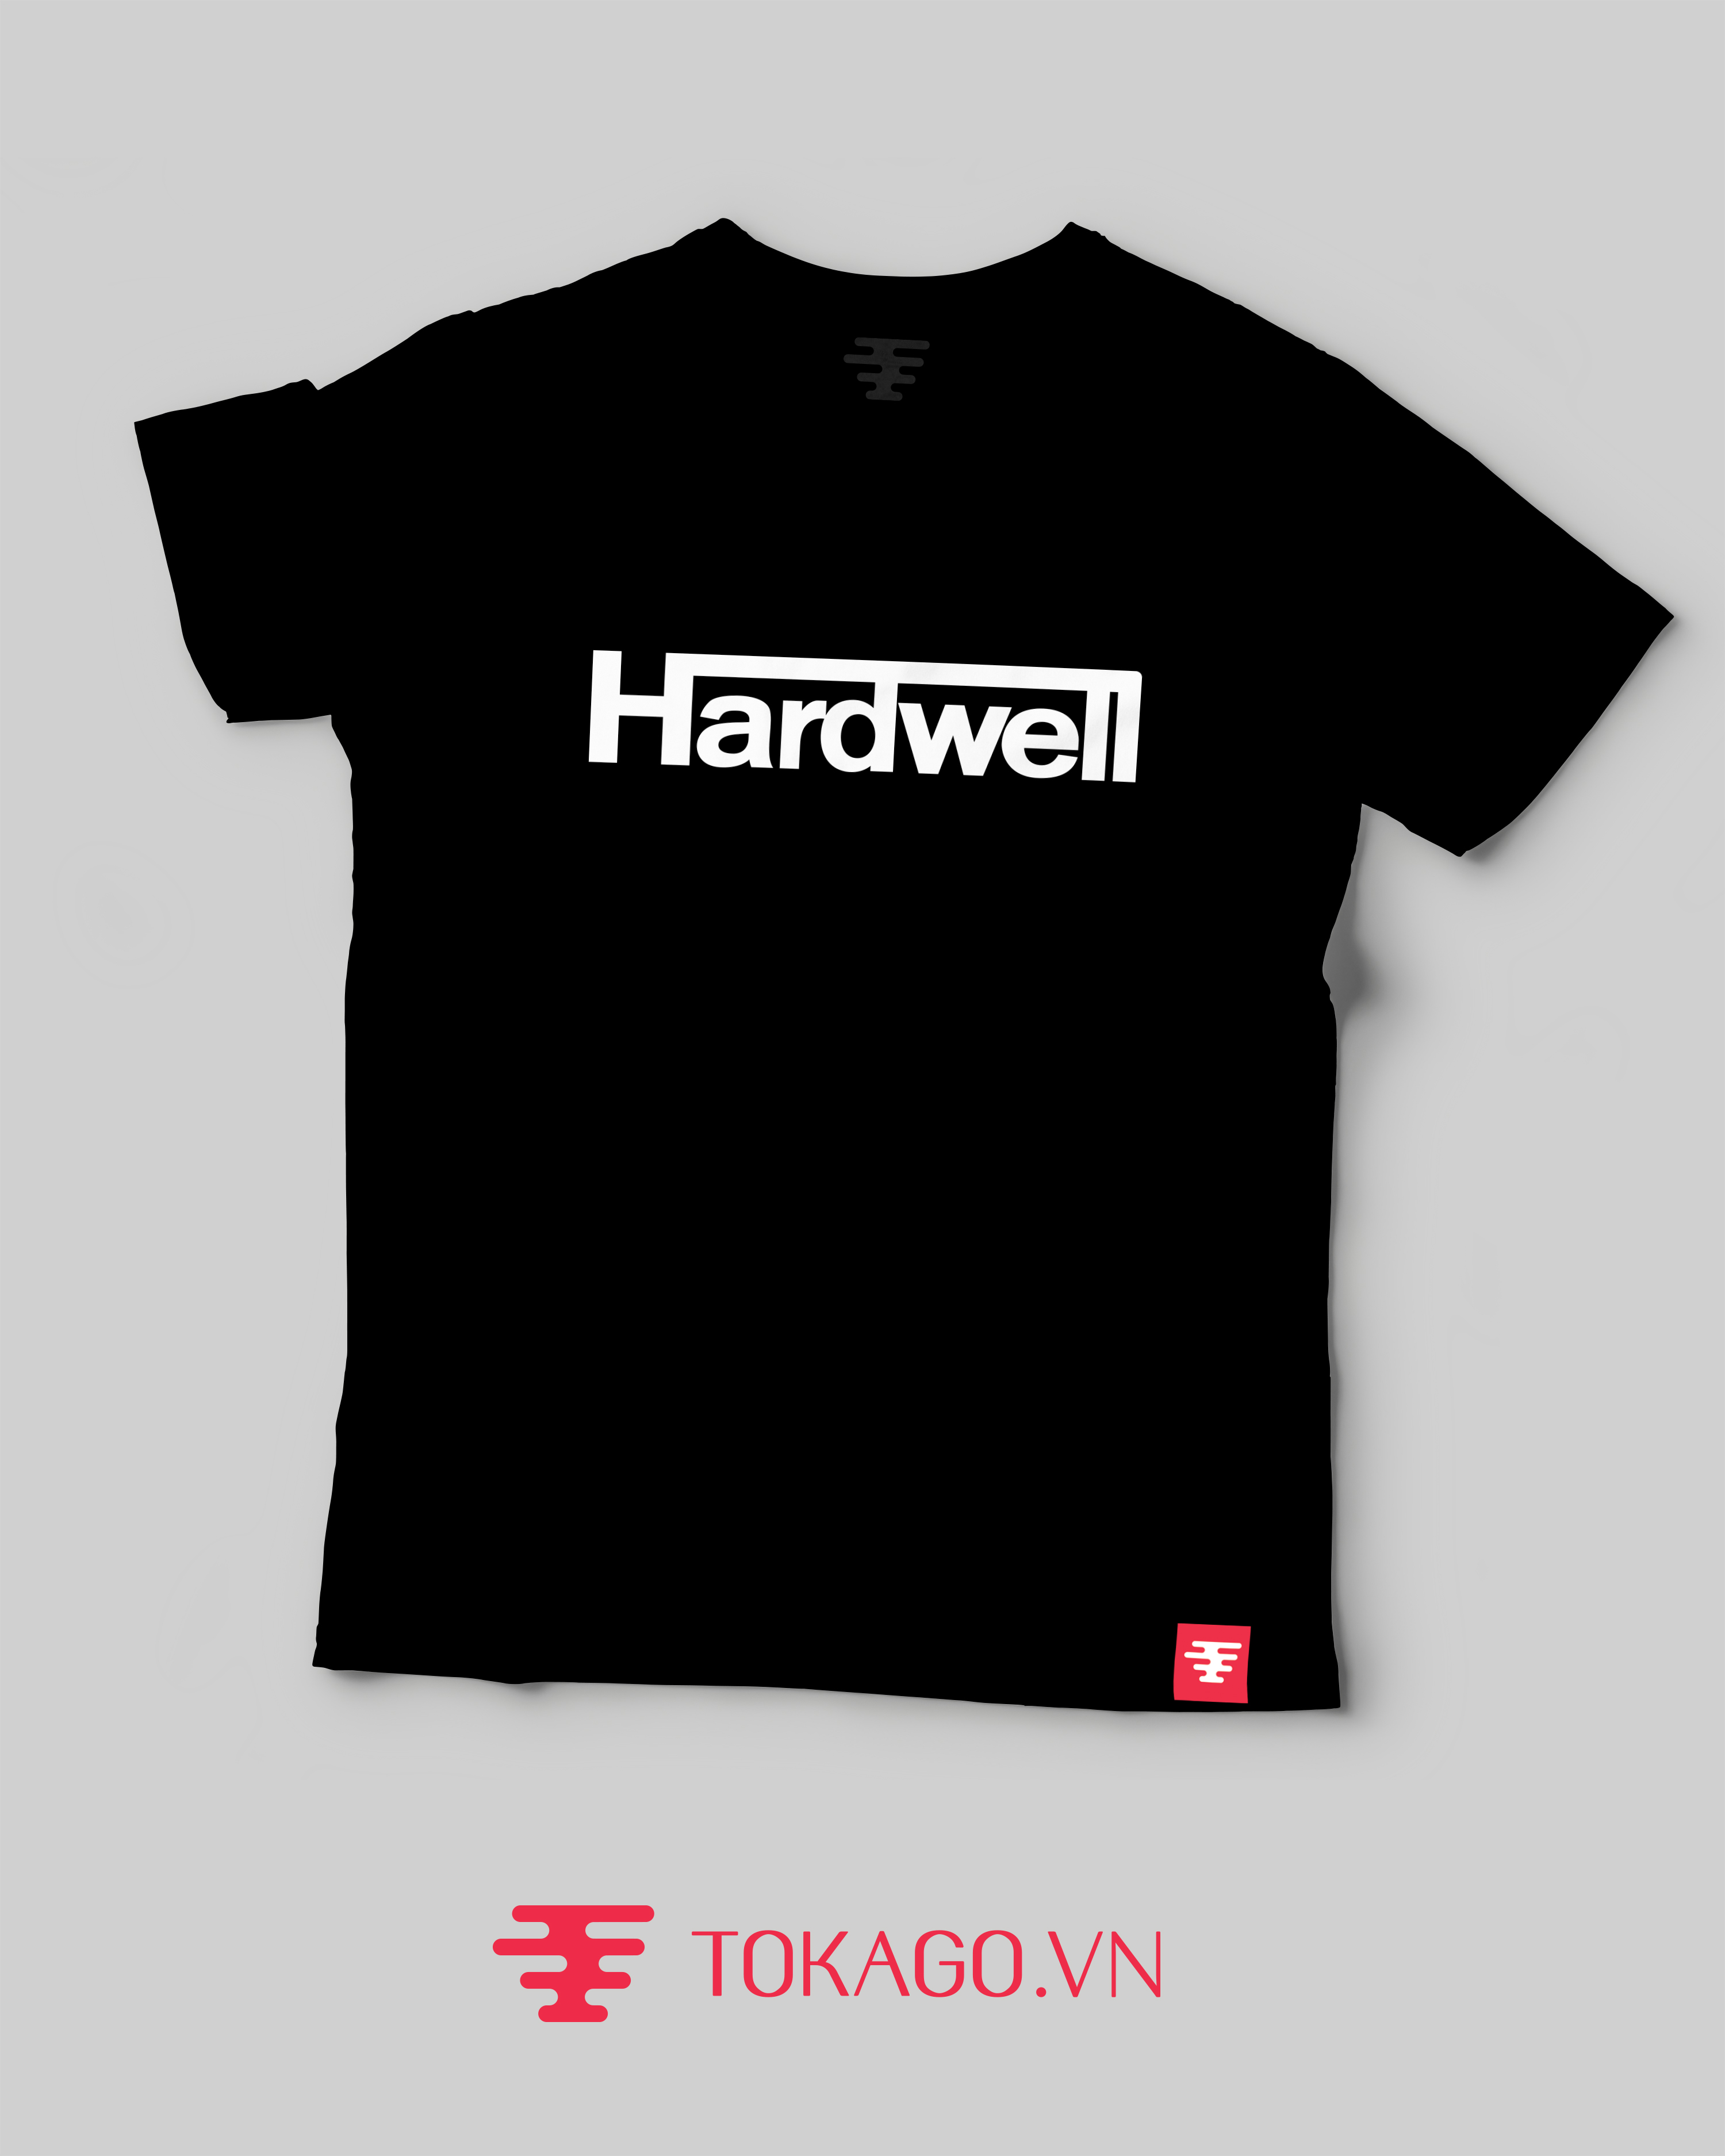 Hardwell mẫu 1